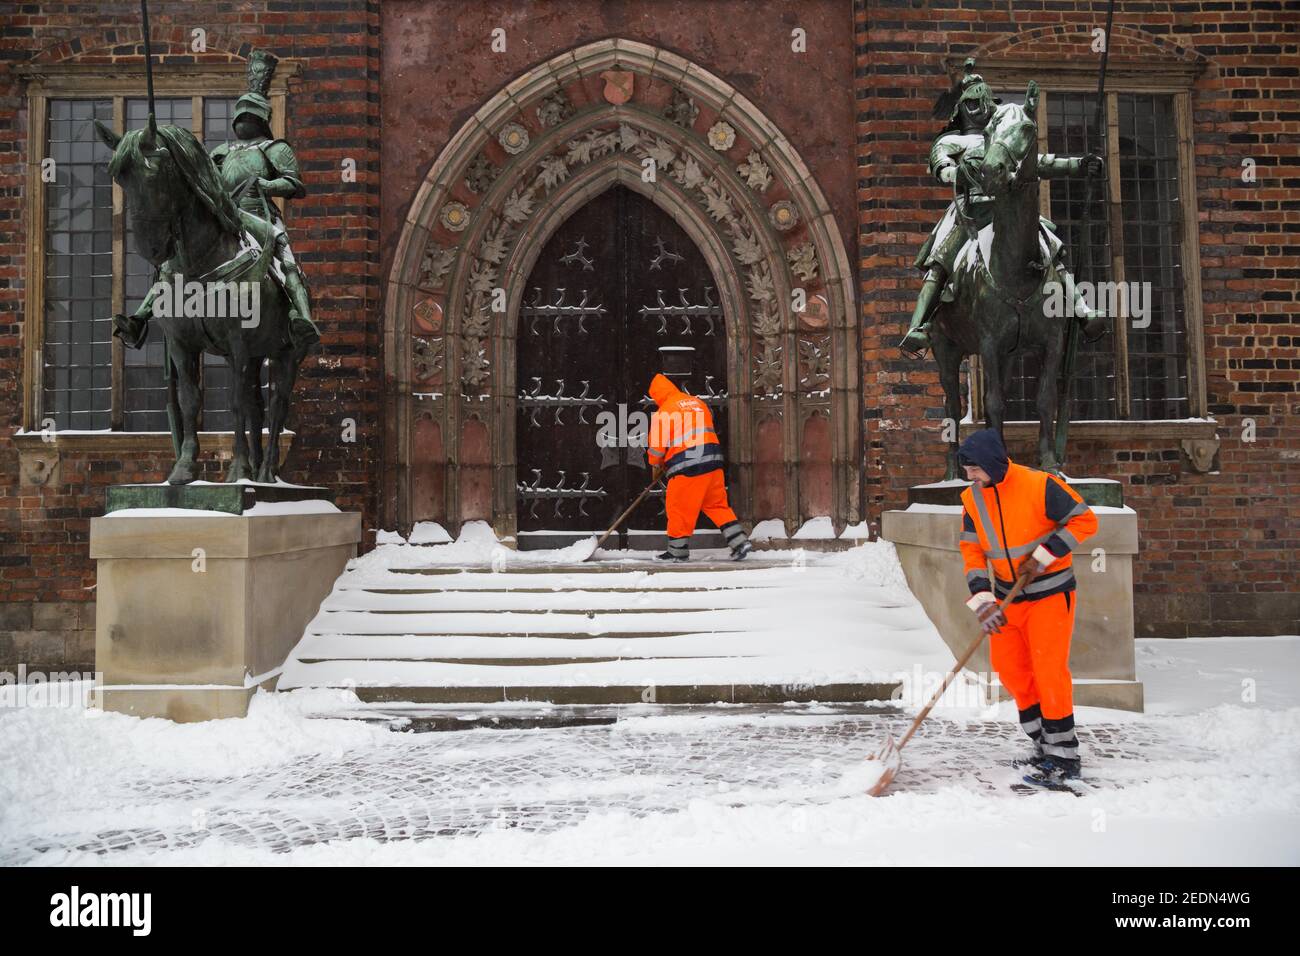 07.02.2021, Brême, Brême, Allemagne - le service municipal de nettoyage de Brême pendant l'entretien d'hiver devant l'entrée de la ville de Brême hal Banque D'Images